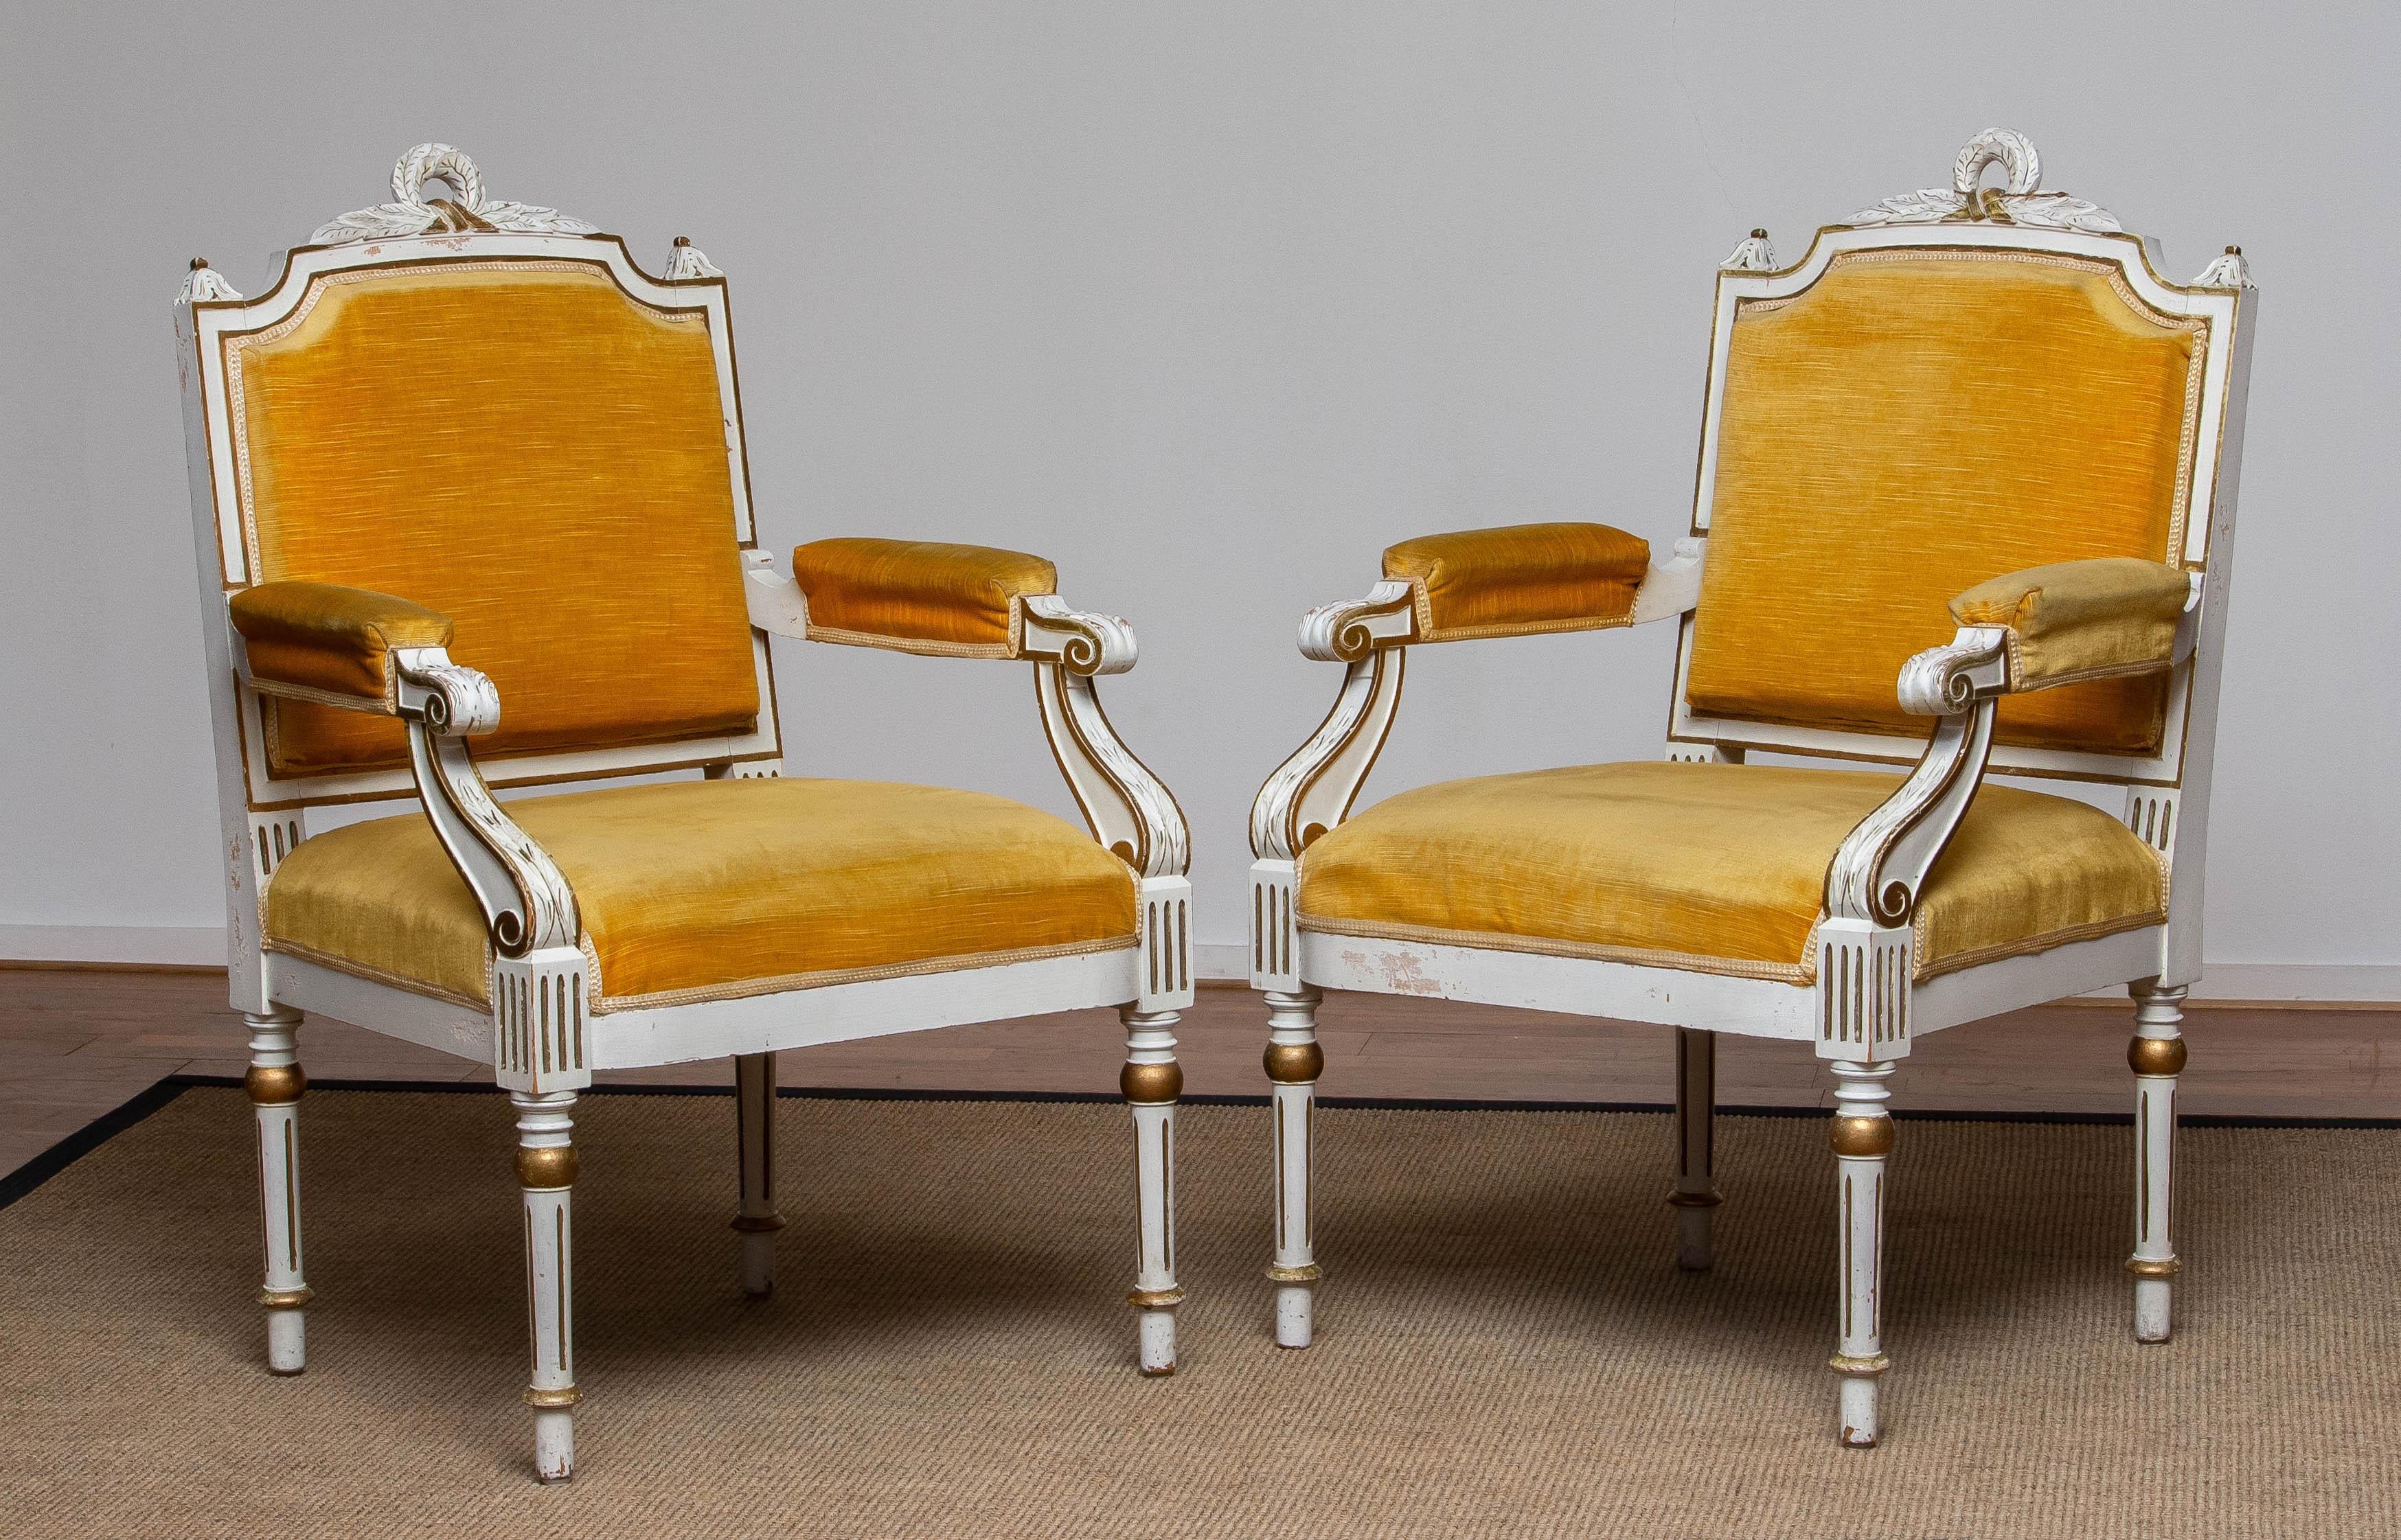 Sehr reiche dekorative Garnitur aus zwei weißen Gustavianischen Sesseln aus der Mitte des 19. Jahrhunderts mit vergoldeten und bemalten Details.
Beide Holzrahmen sind in gutem Zustand. Die goldfarbene Samtpolsterung stammt aus einer viel späteren